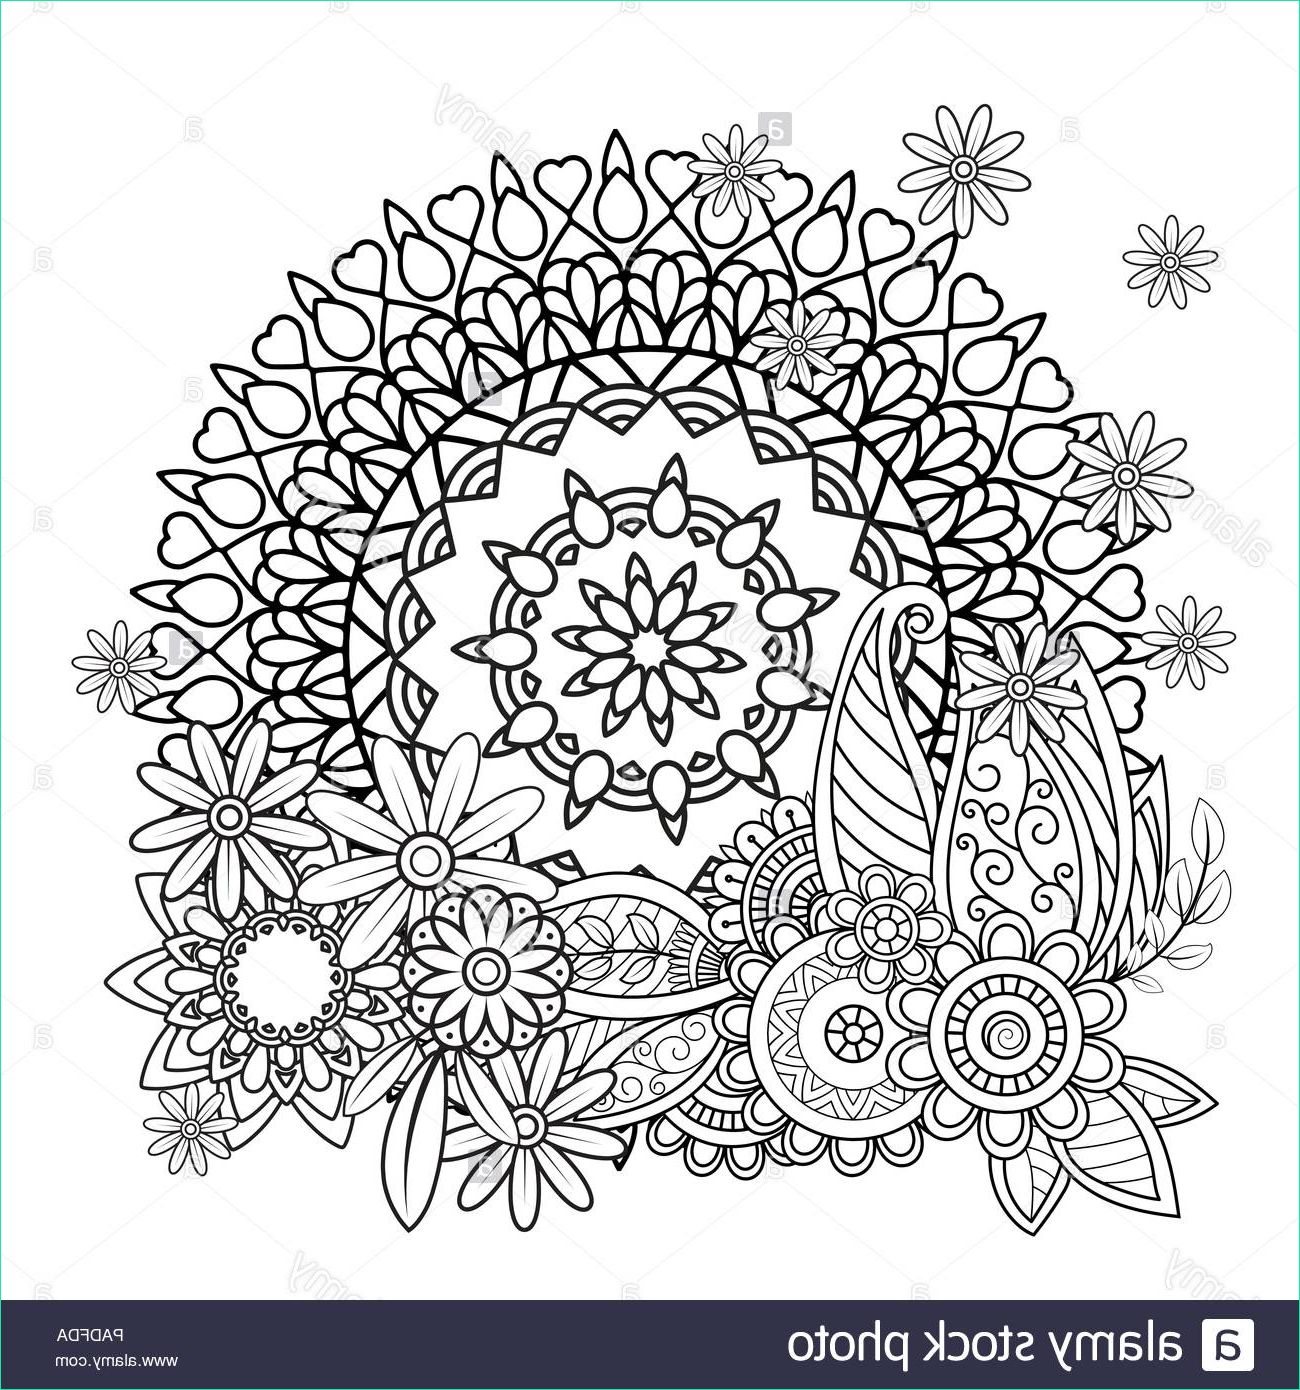 motif floral mandala en noir et blanc livre de coloriage adultes page avec des fleurs et des mandalas motif oriental affiche des elements decoratifs hand drawn vector illustration image